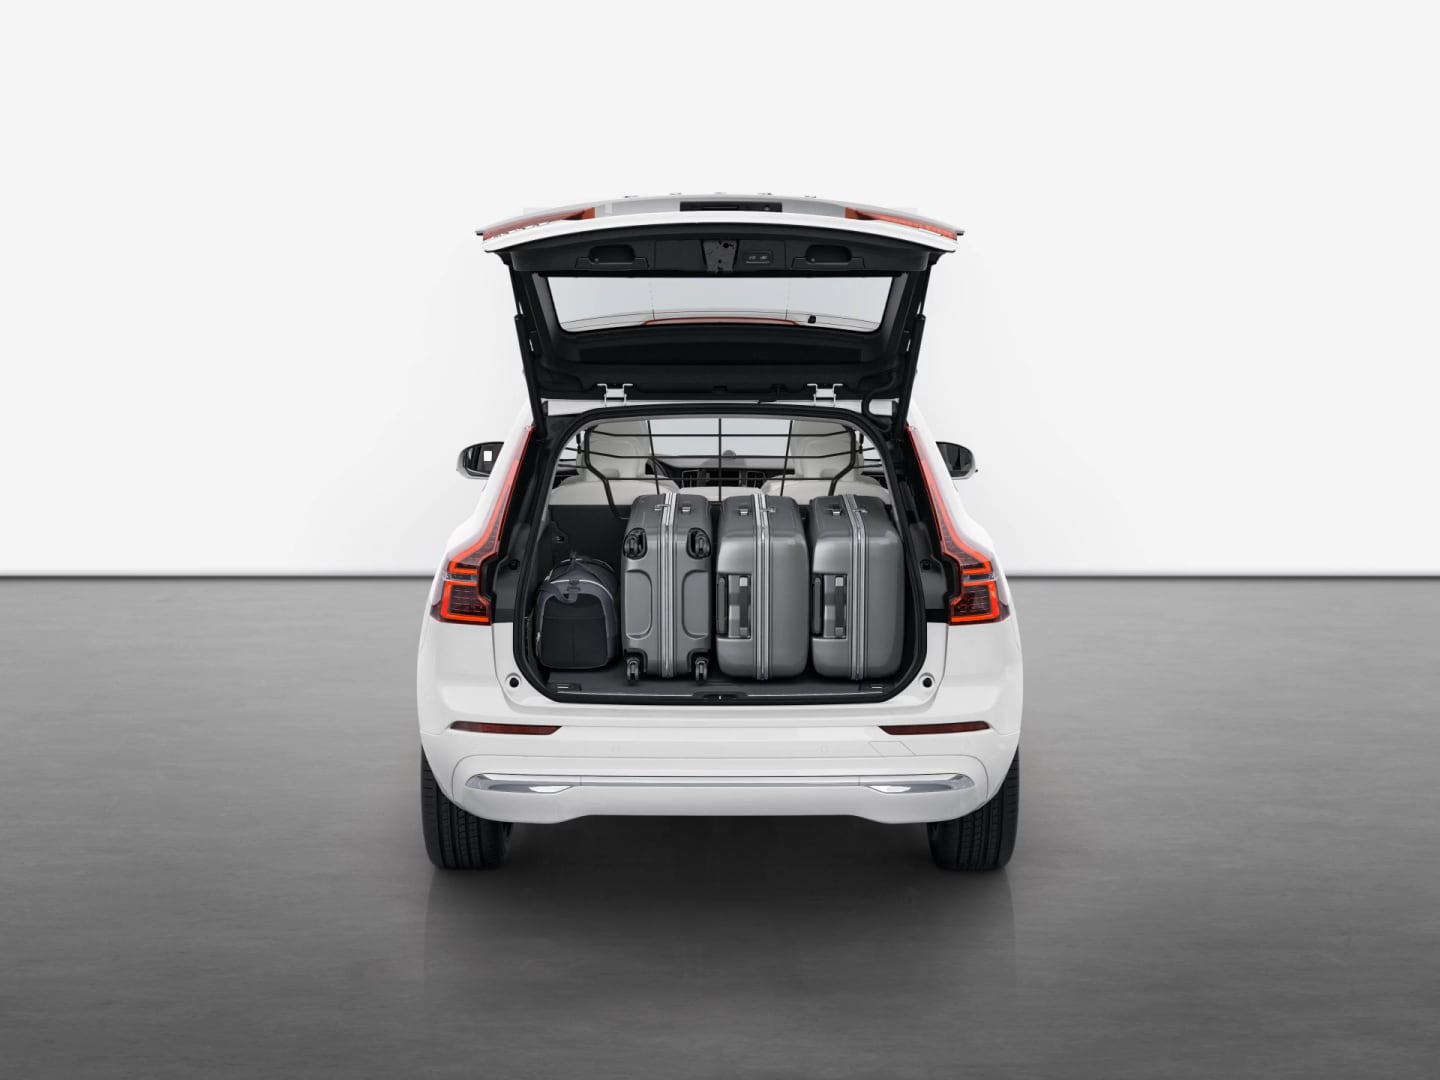 Achteraanzicht van de Volvo XC60 Plug-in hybrid met geopende kofferbak maakt duidelijk hoeveel bagage erin past.